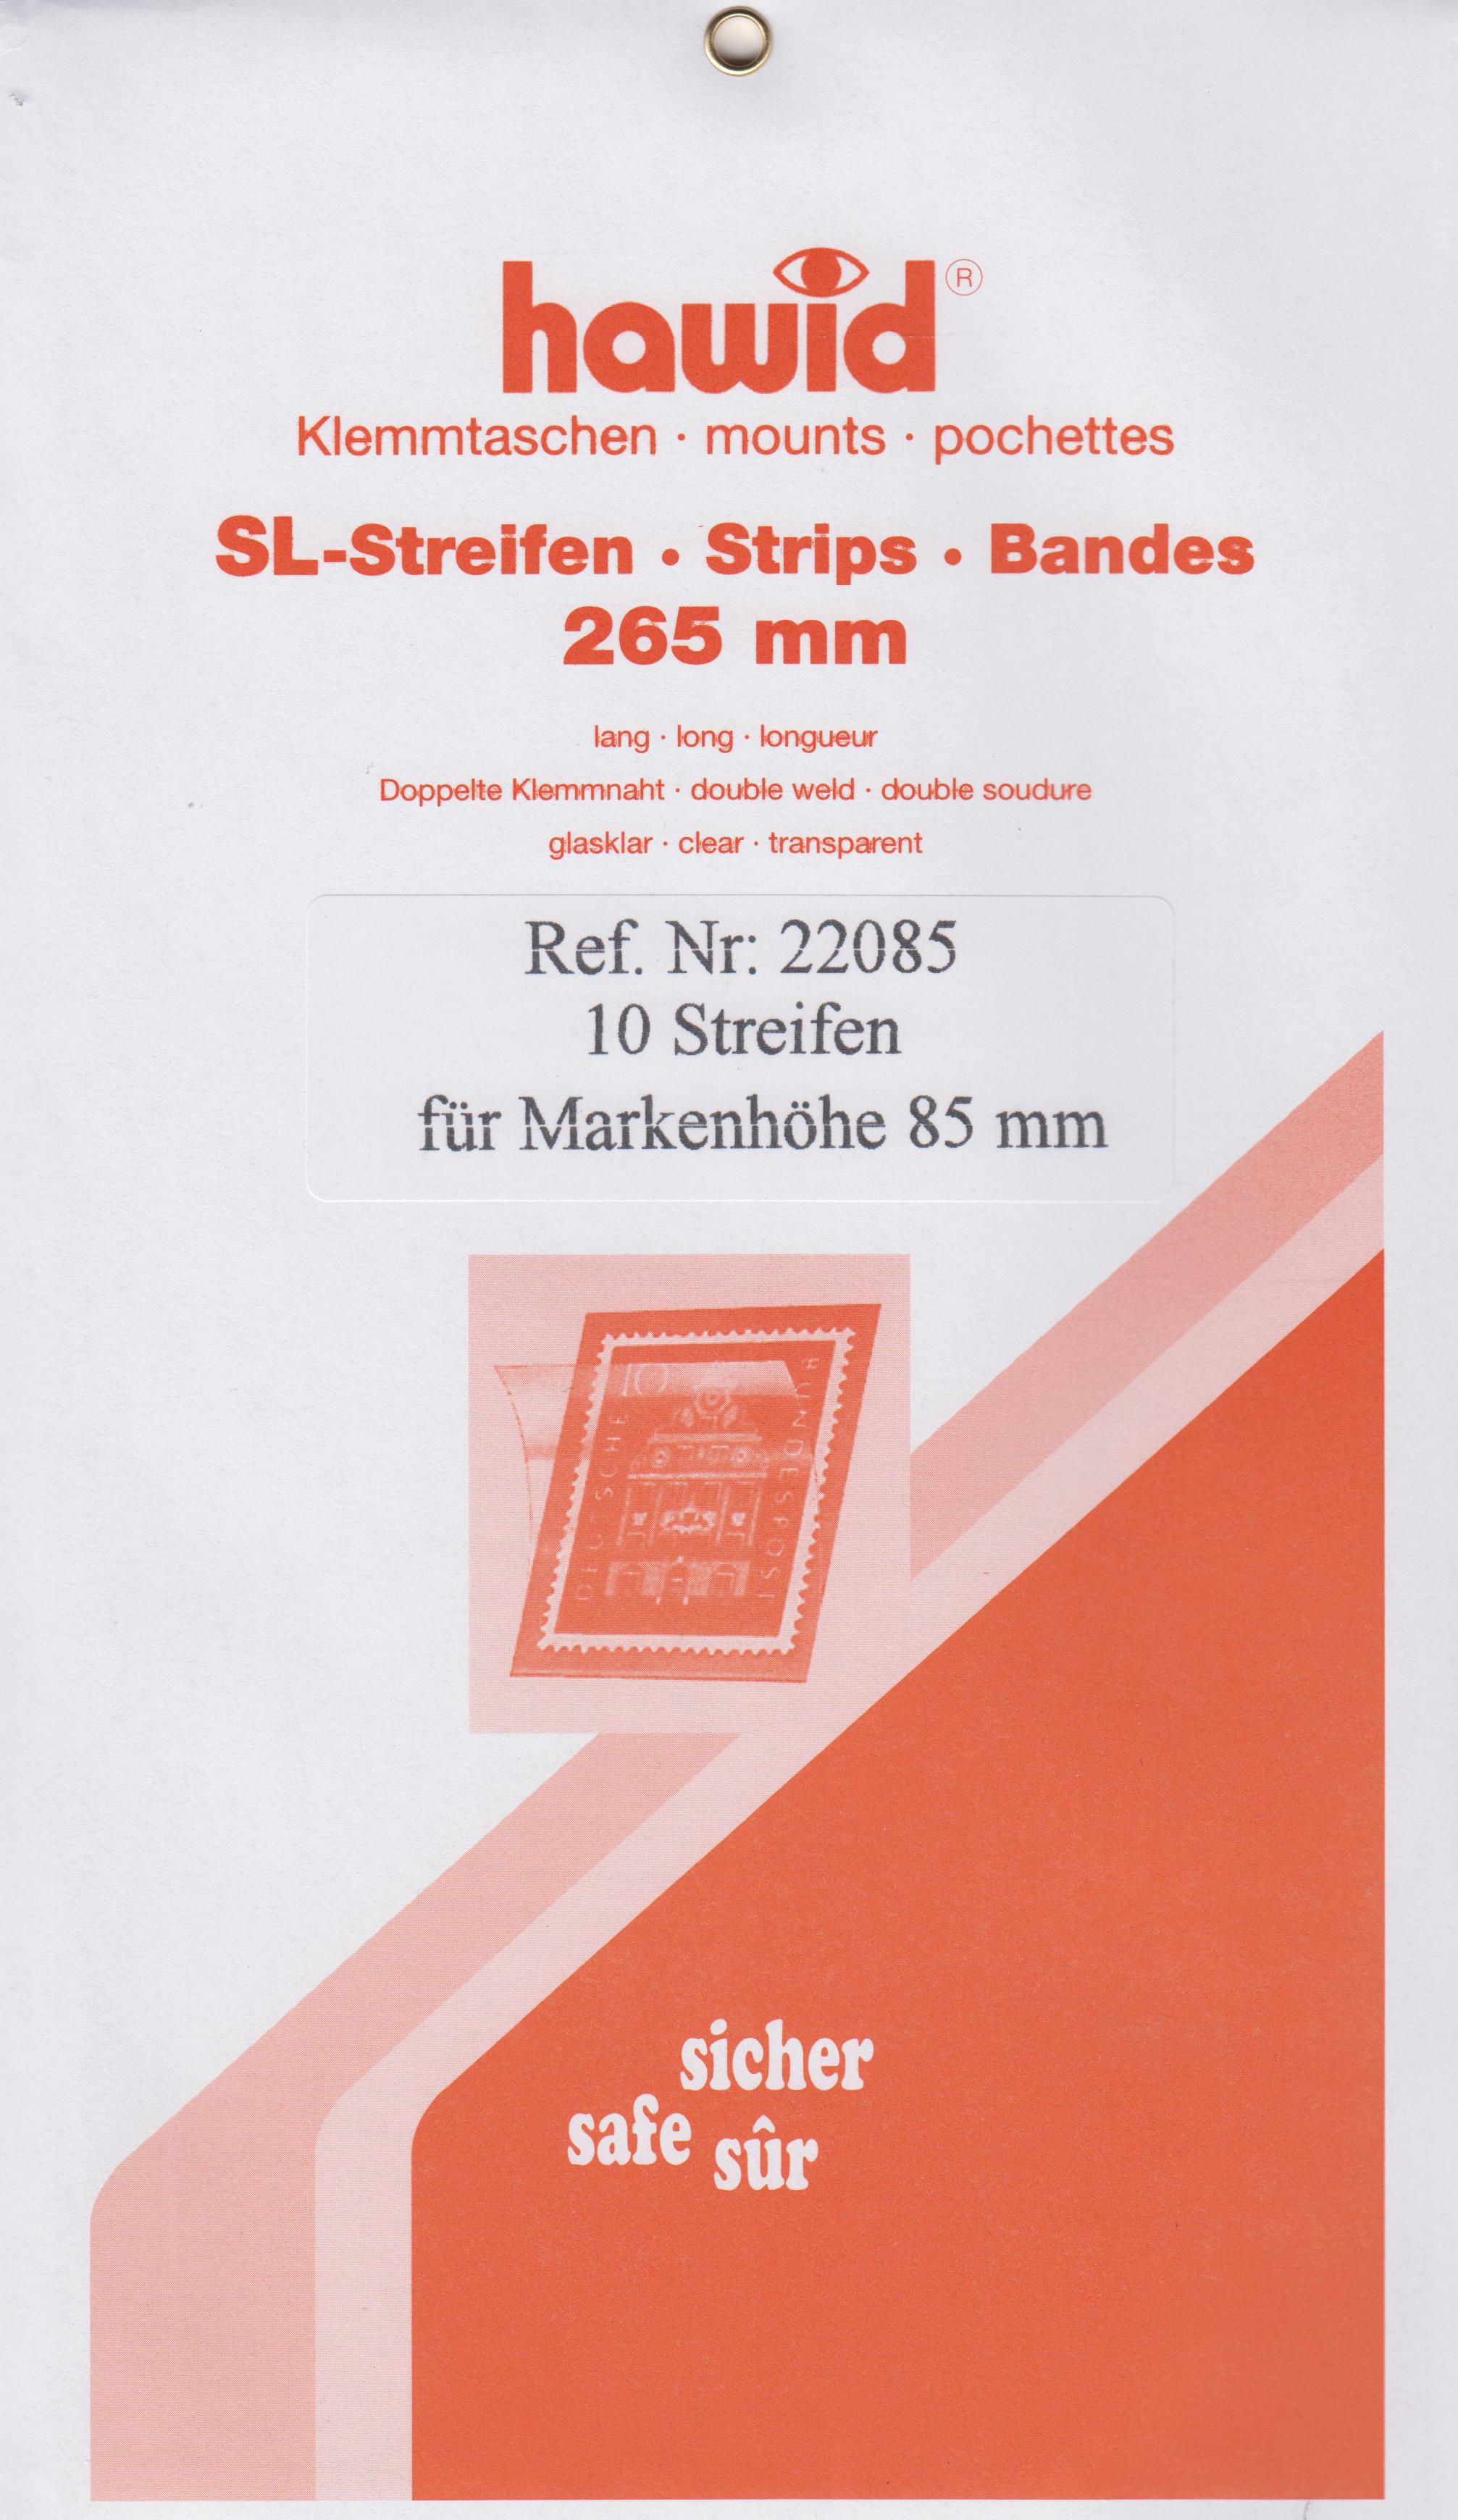 Hawid SL-Streifen Nr. 22085, 10 Streifen für Markenhöhe 85mm, glasklar